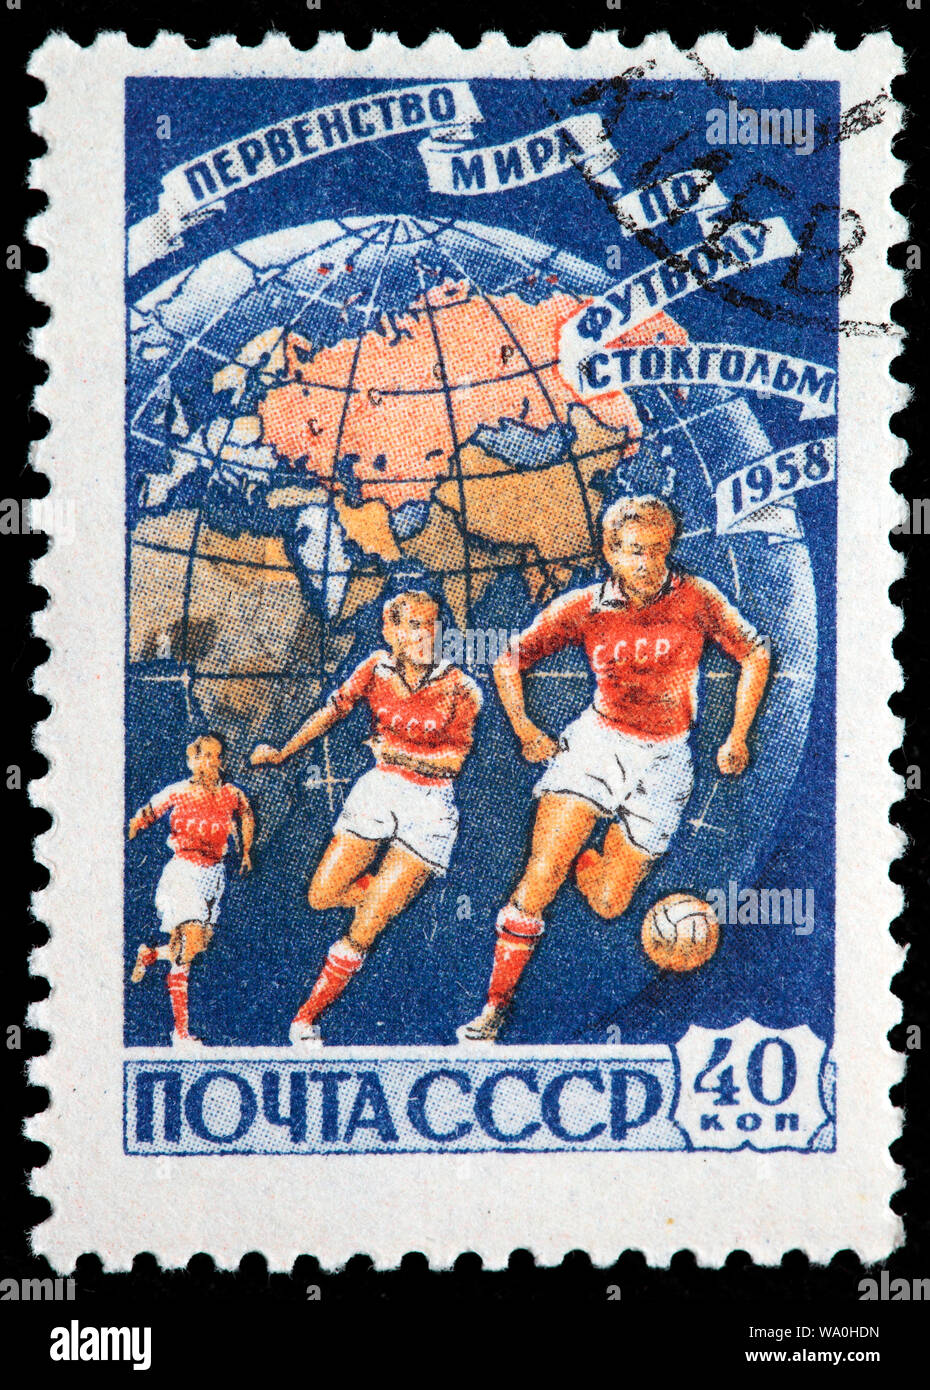 Coupe du Monde de football en 2004, Stockholm, Suède, le timbre-poste, Russie, URSS, 1958 Banque D'Images